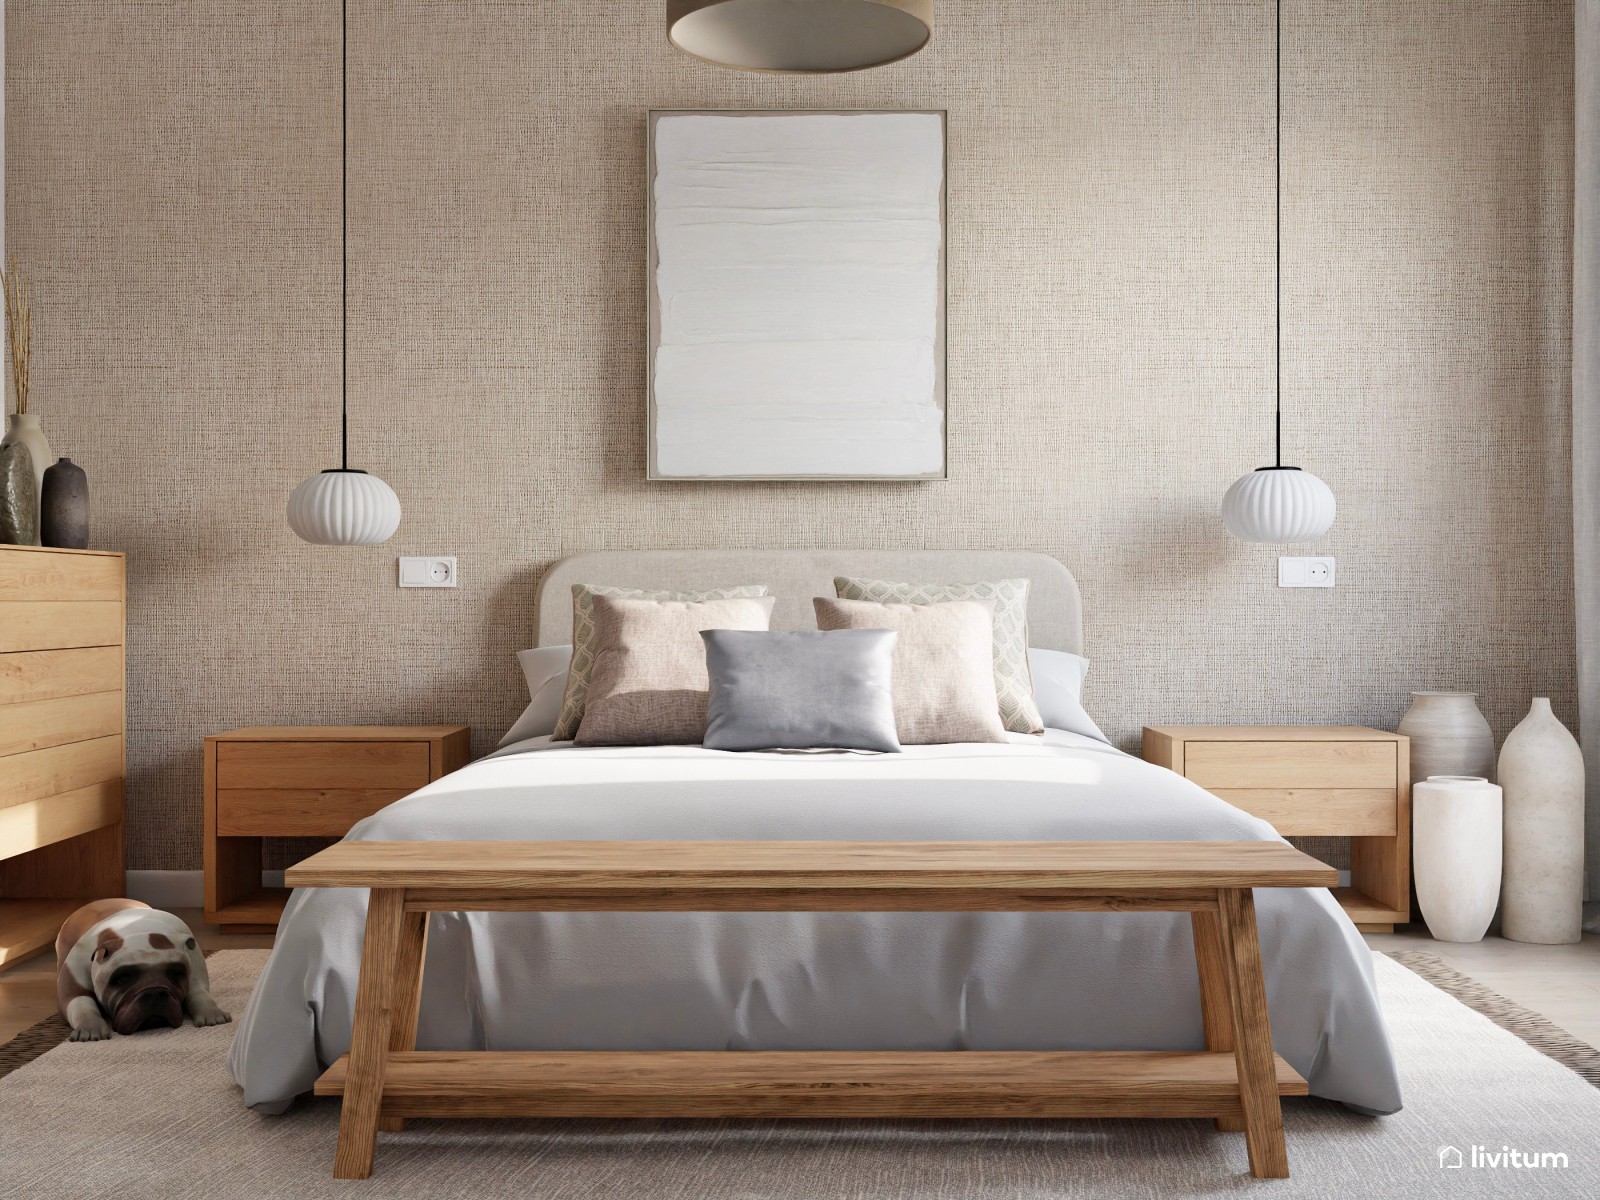 Dormitorio moderno y minimalista con lámparas colgantes 